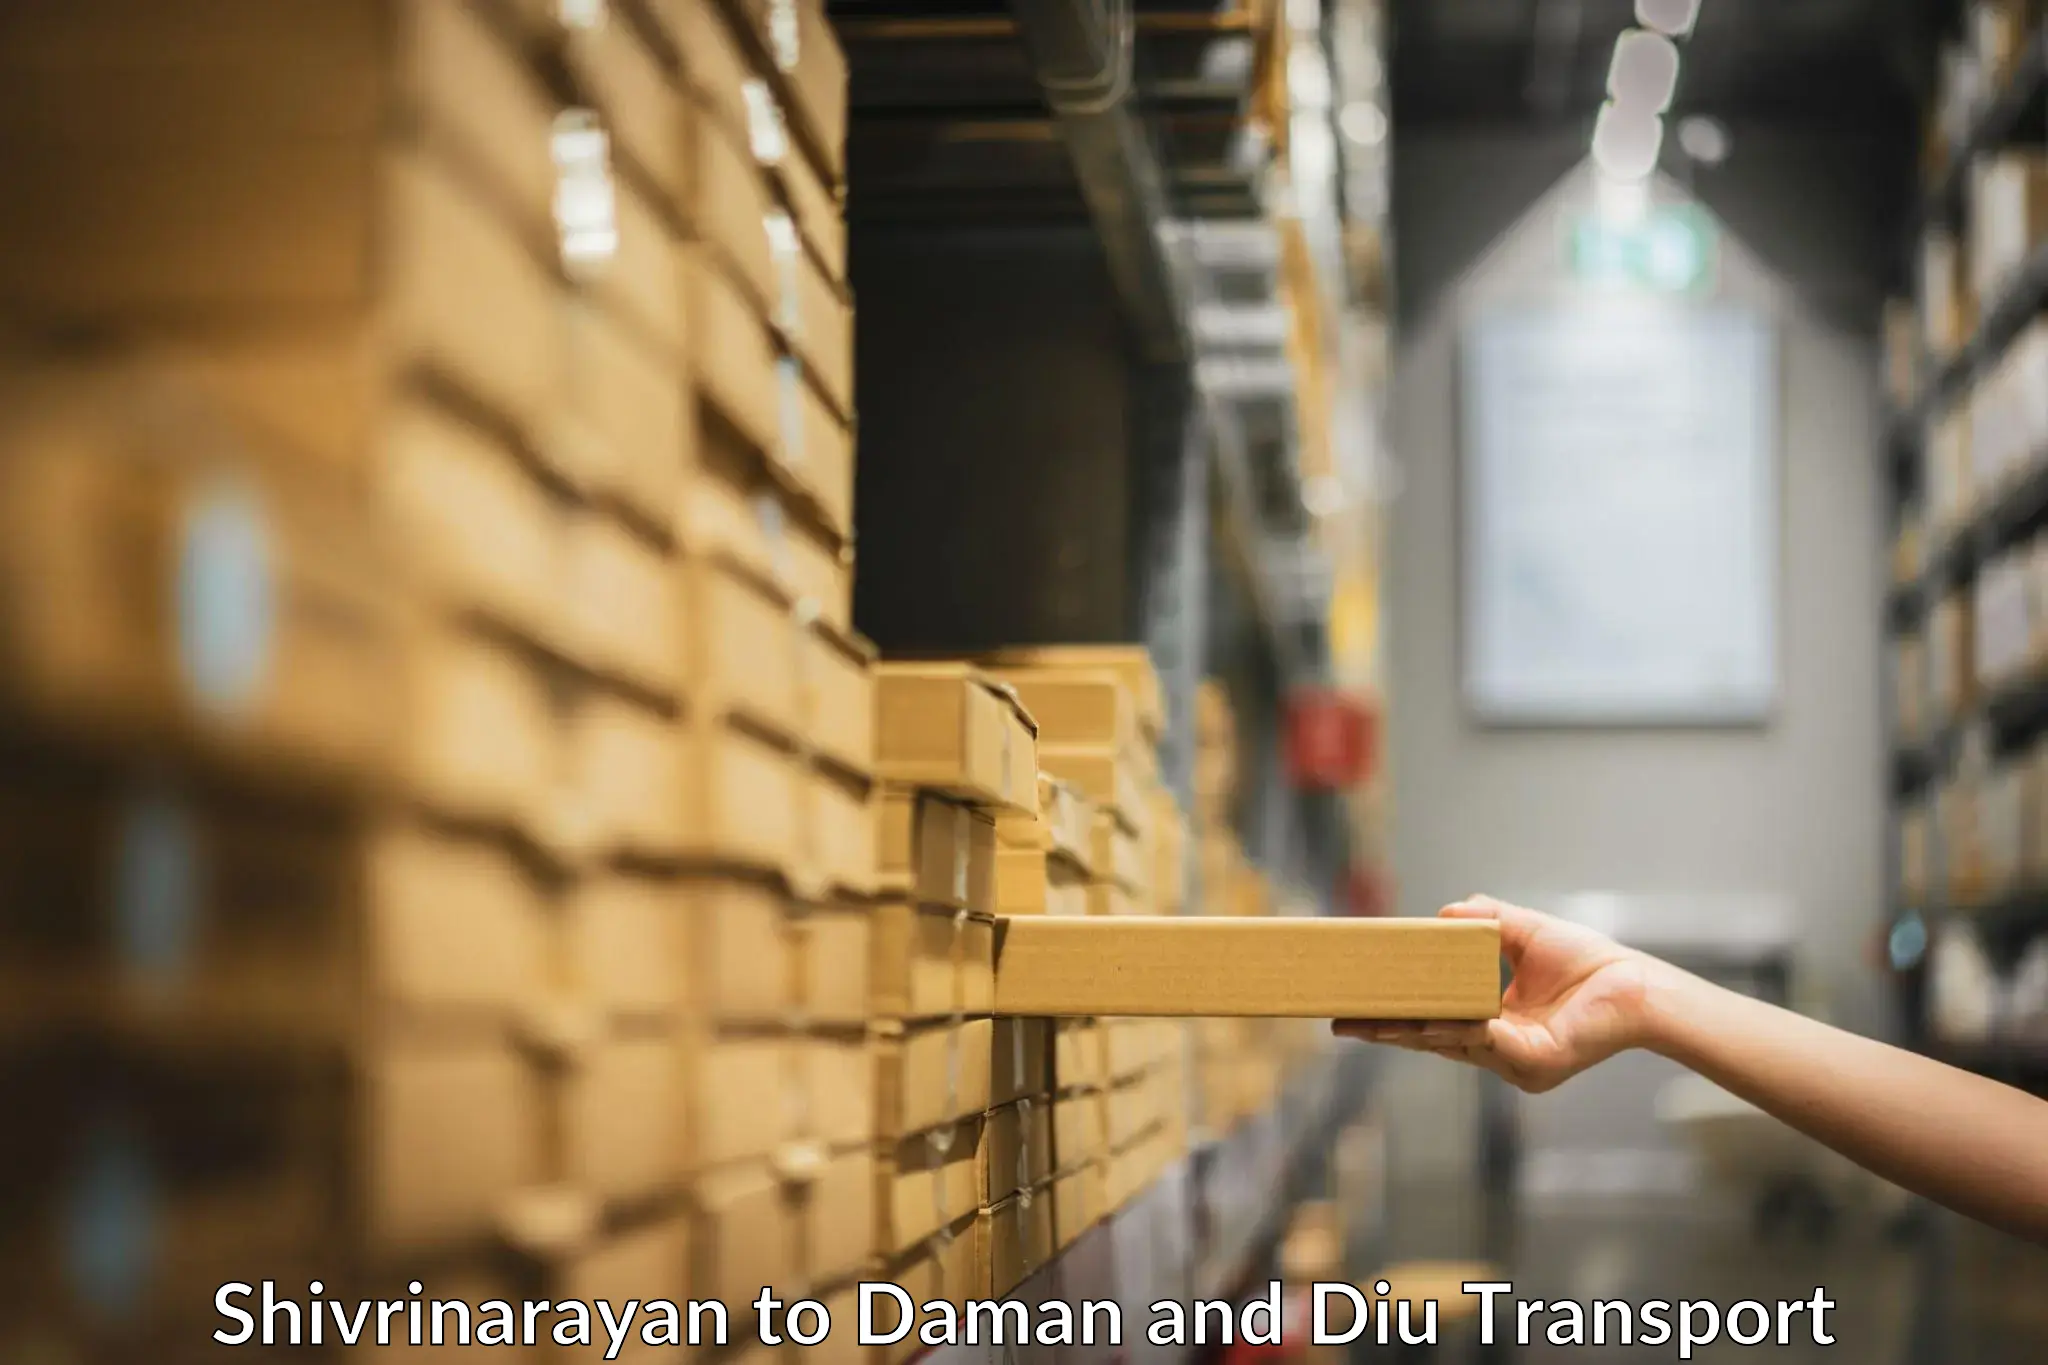 Furniture transport service Shivrinarayan to Daman and Diu